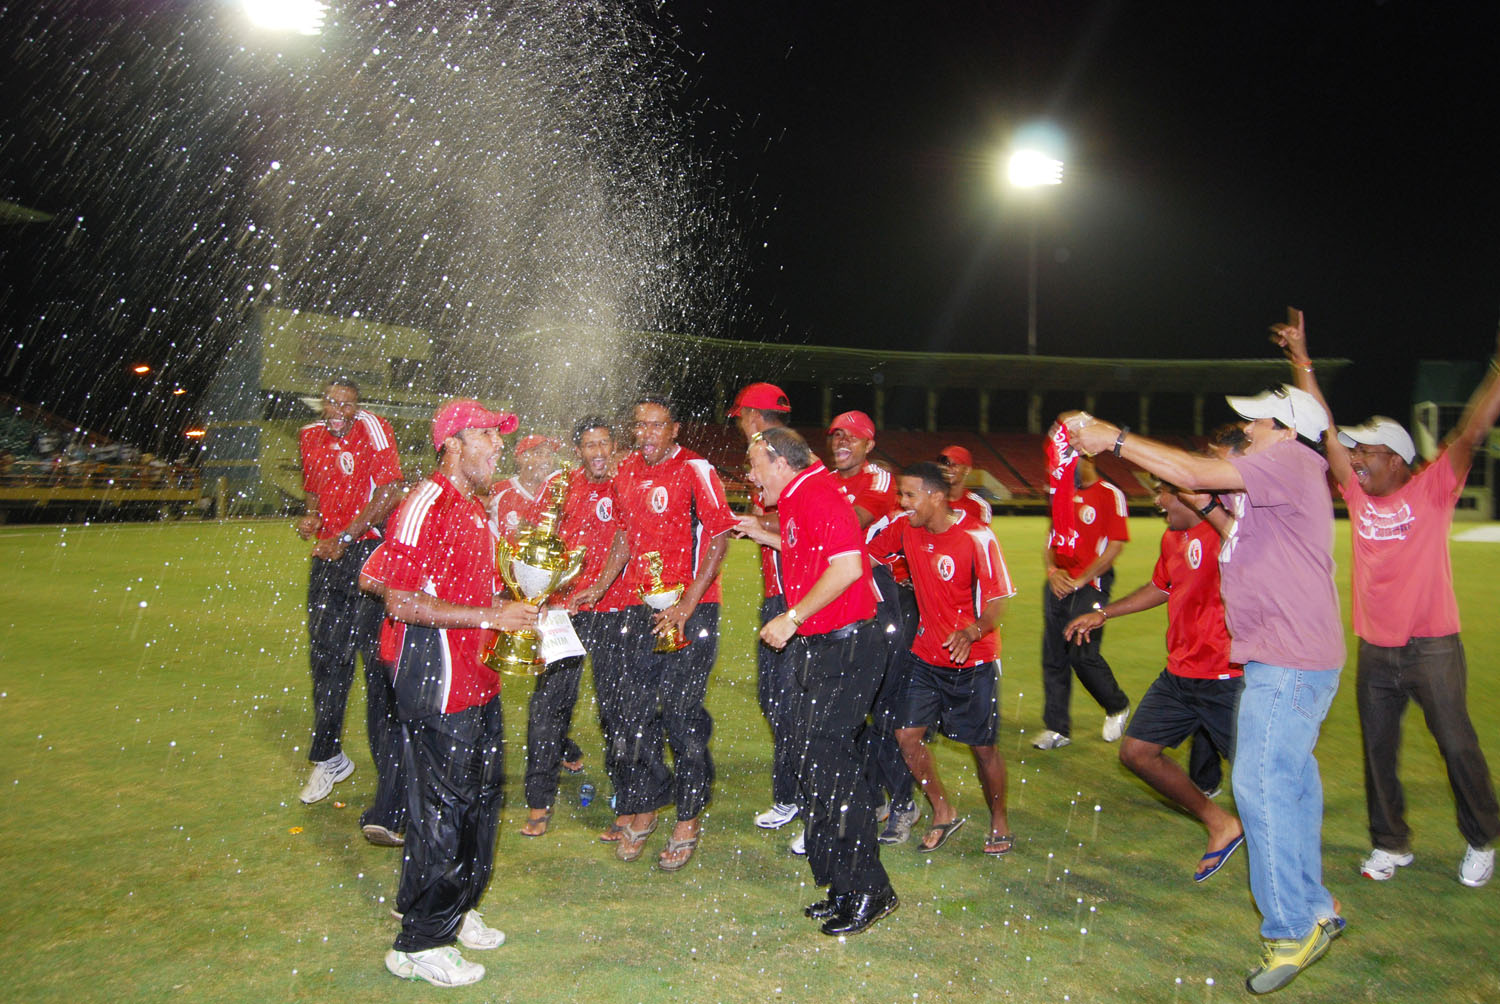 Trinidad Cricket Team